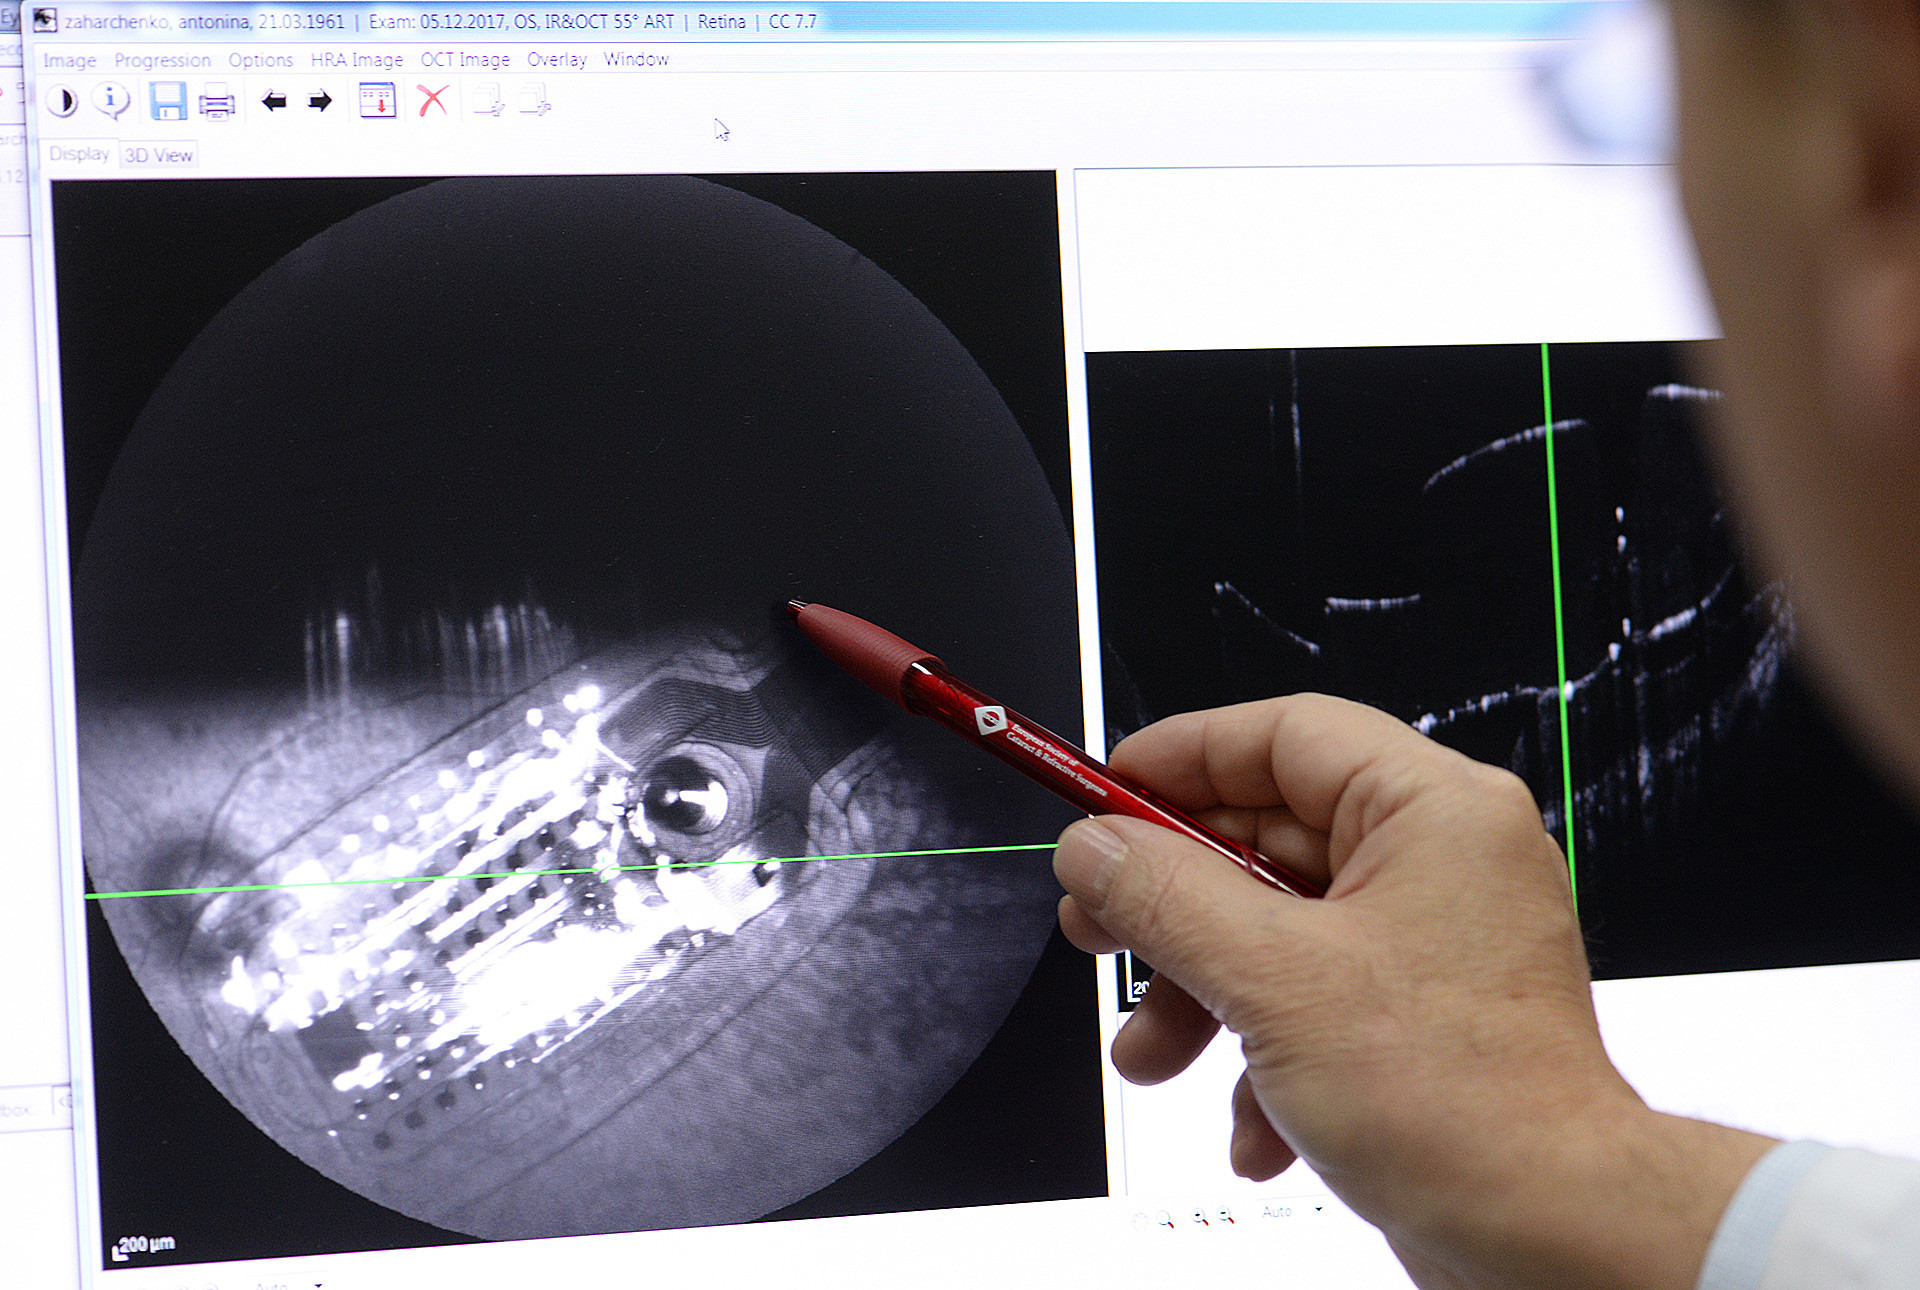 Током операције се у жуту мрљу, централни део мрежњаче, уграђује микрочип и пацијент је у стању да види слику у пикселима.